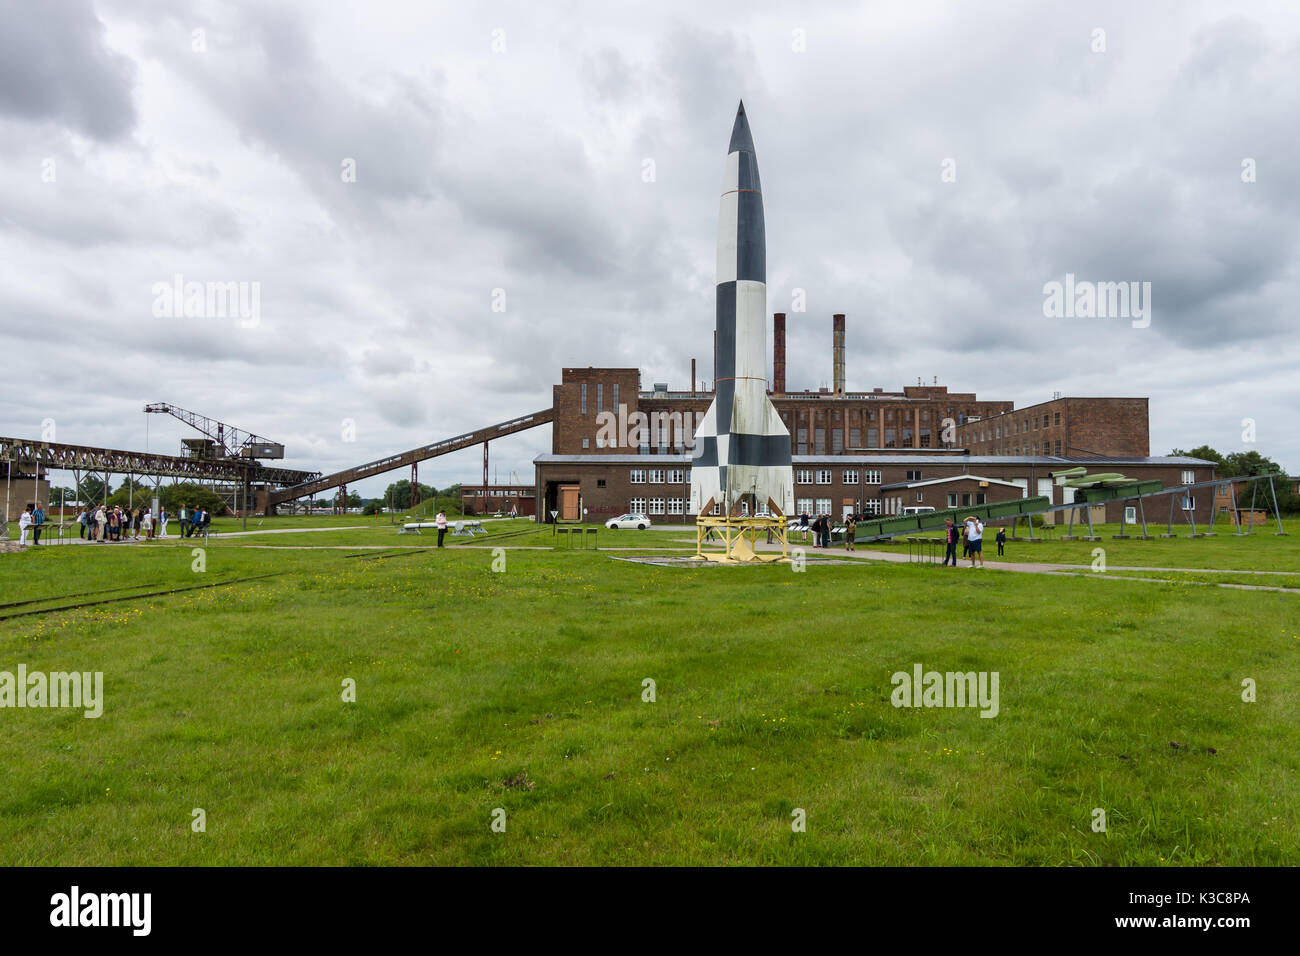 Peenemuende, Germania - Luglio 18, 2017: territorio dell'esercito research center. replica v-2 rocket in primo piano. Foto Stock